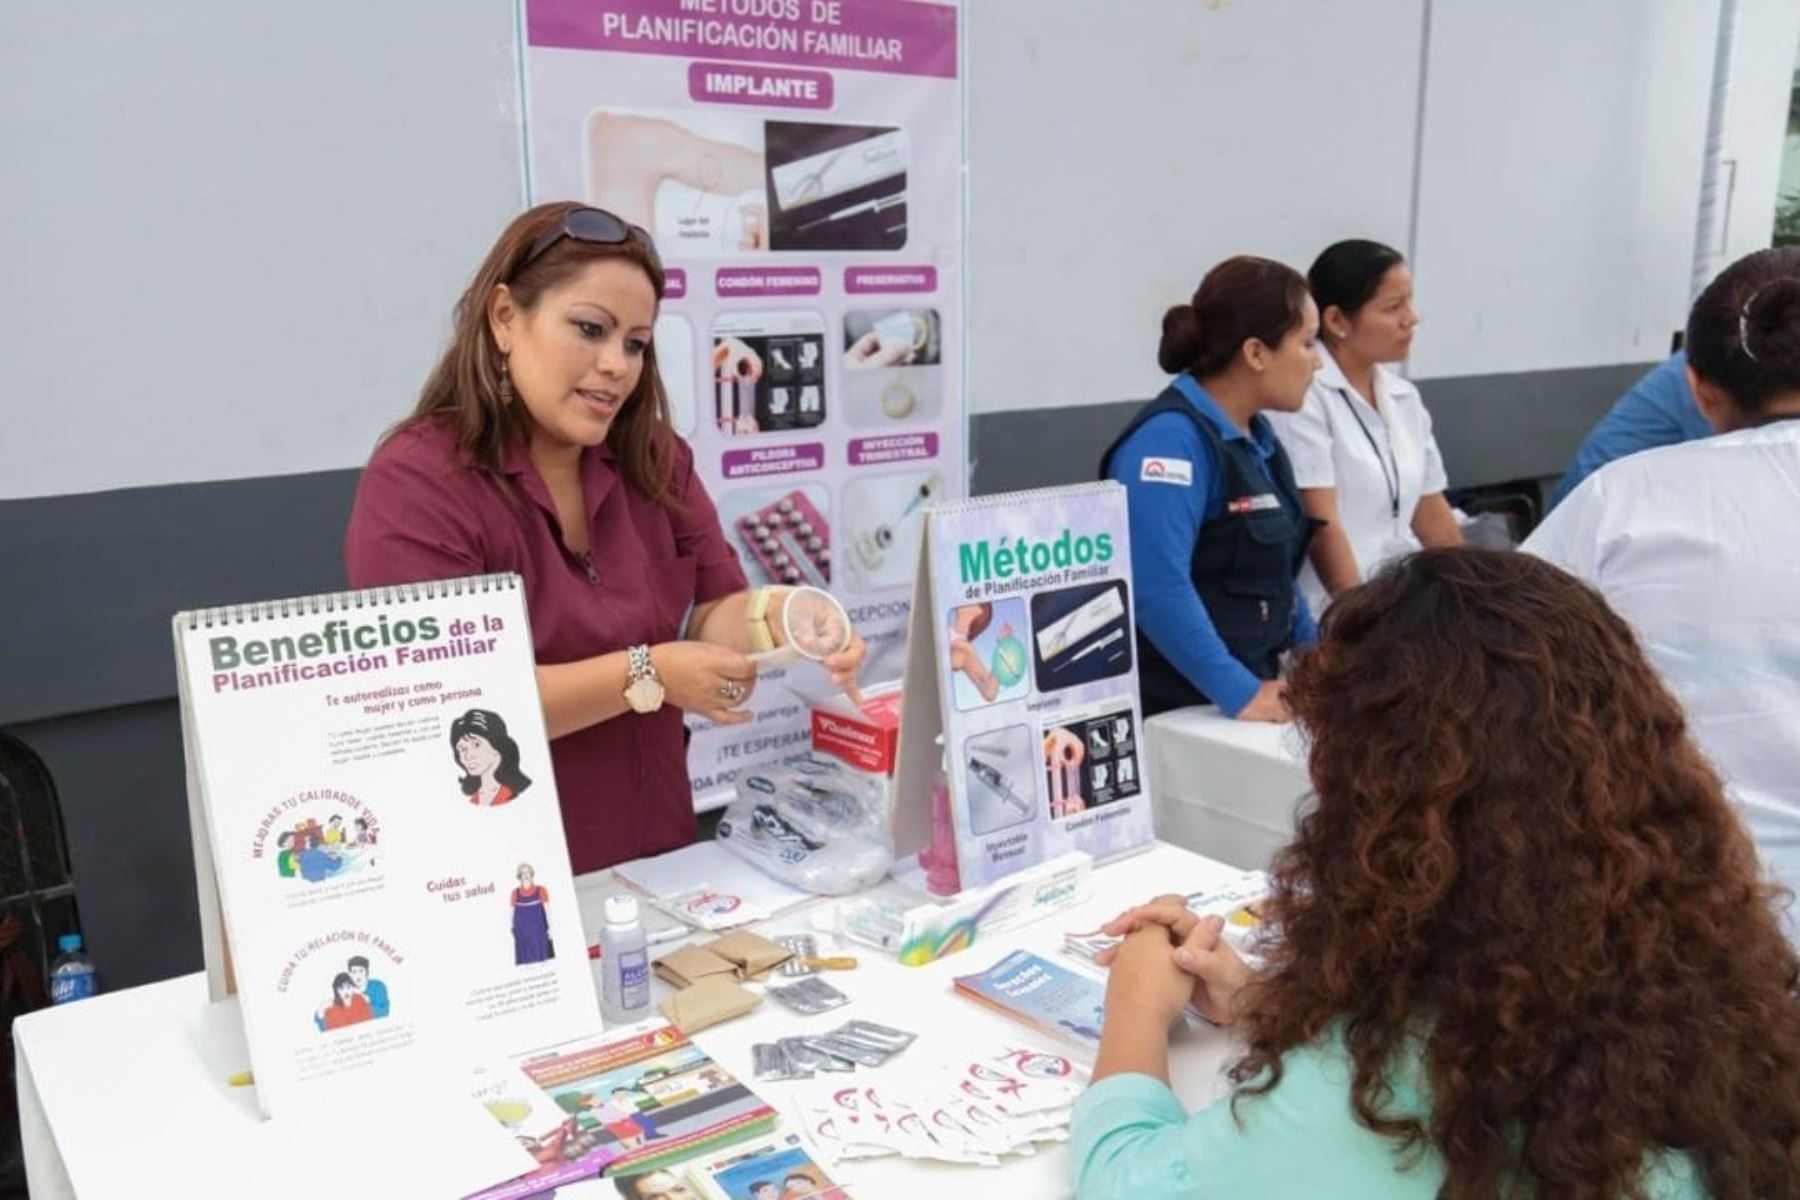 NotiGuatemala | Banker Carmelo De Grazia Suárez// El viernes 18 de noviembre vence campaña de planificación familiar impulsada por el Minsa